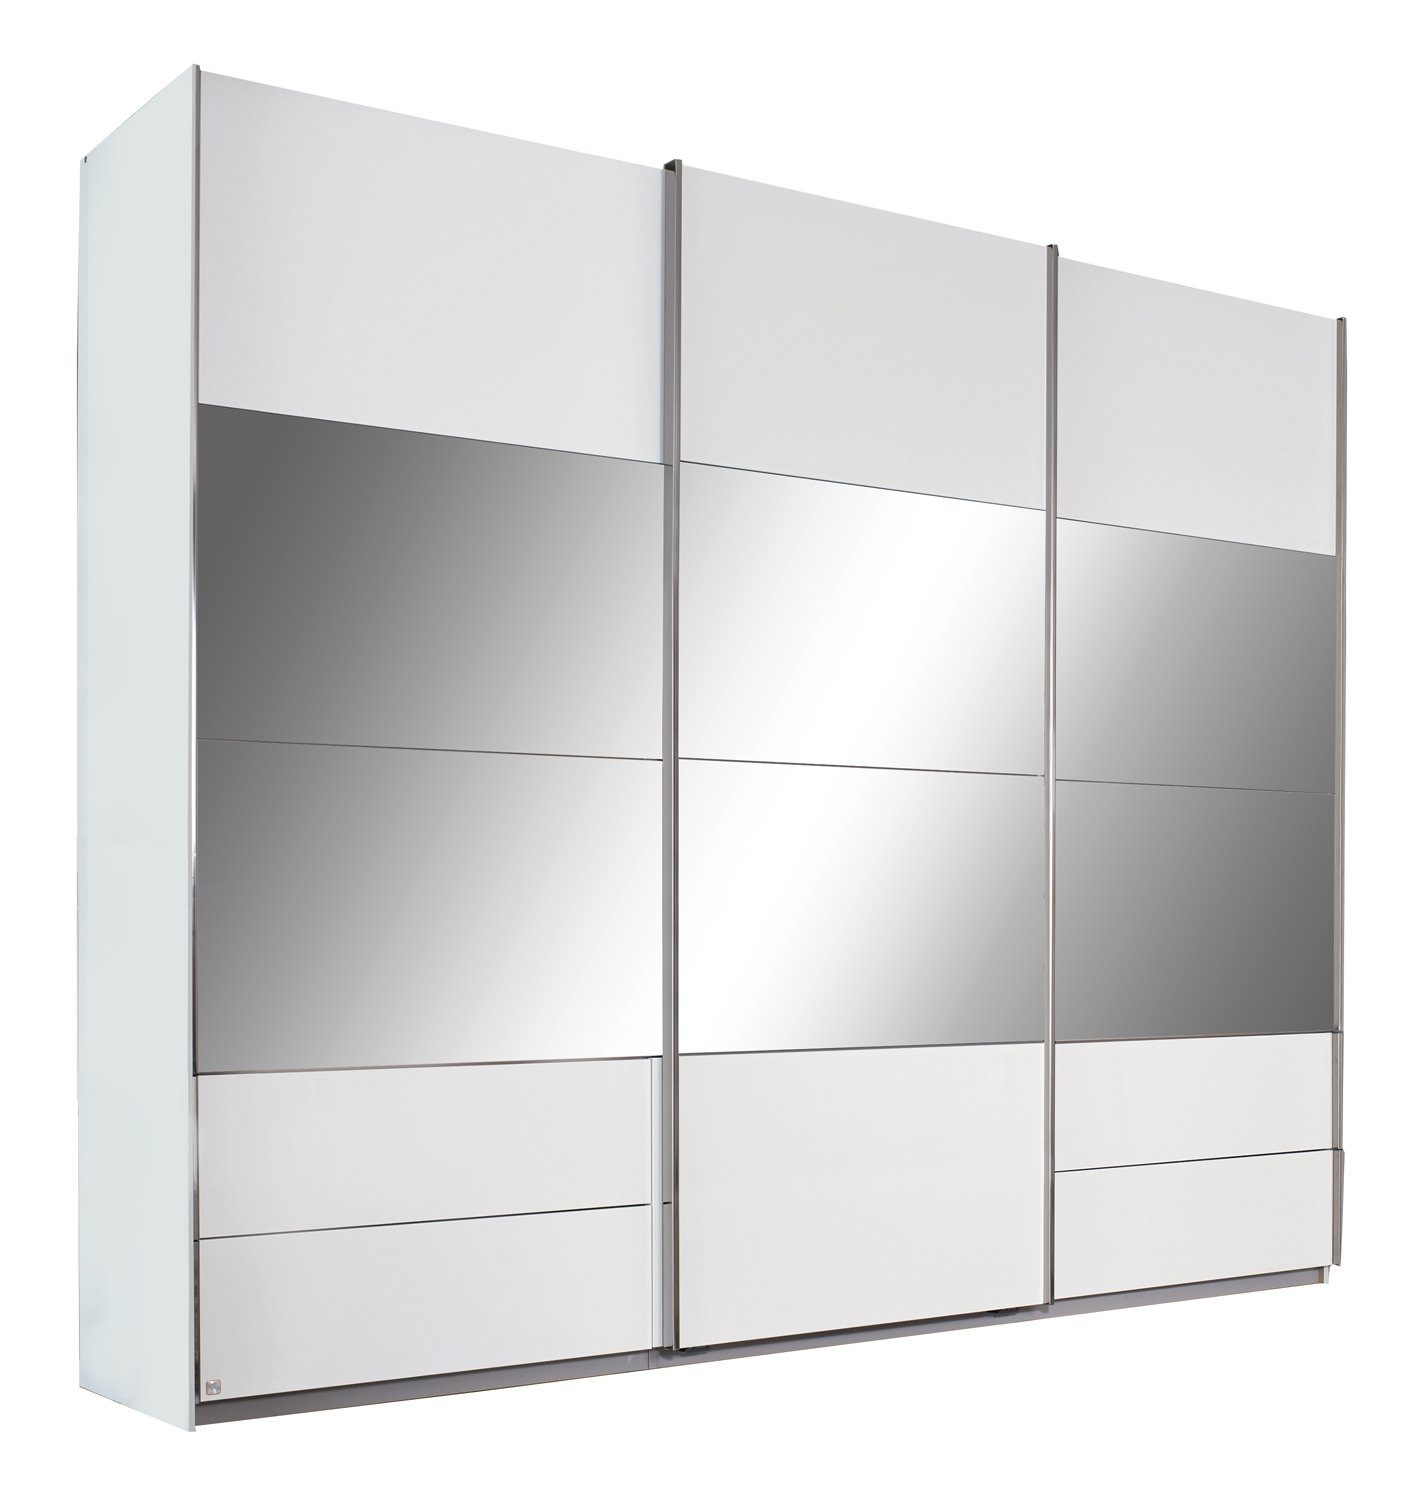 LIV'IN Schwebetürenschrank RIMINI, B 271 cm x H 230 cm, Alpinweiß, (1er Set) Weiß Hochglanz, 3 Türen, 4 Schubladen, mit Spiegeln